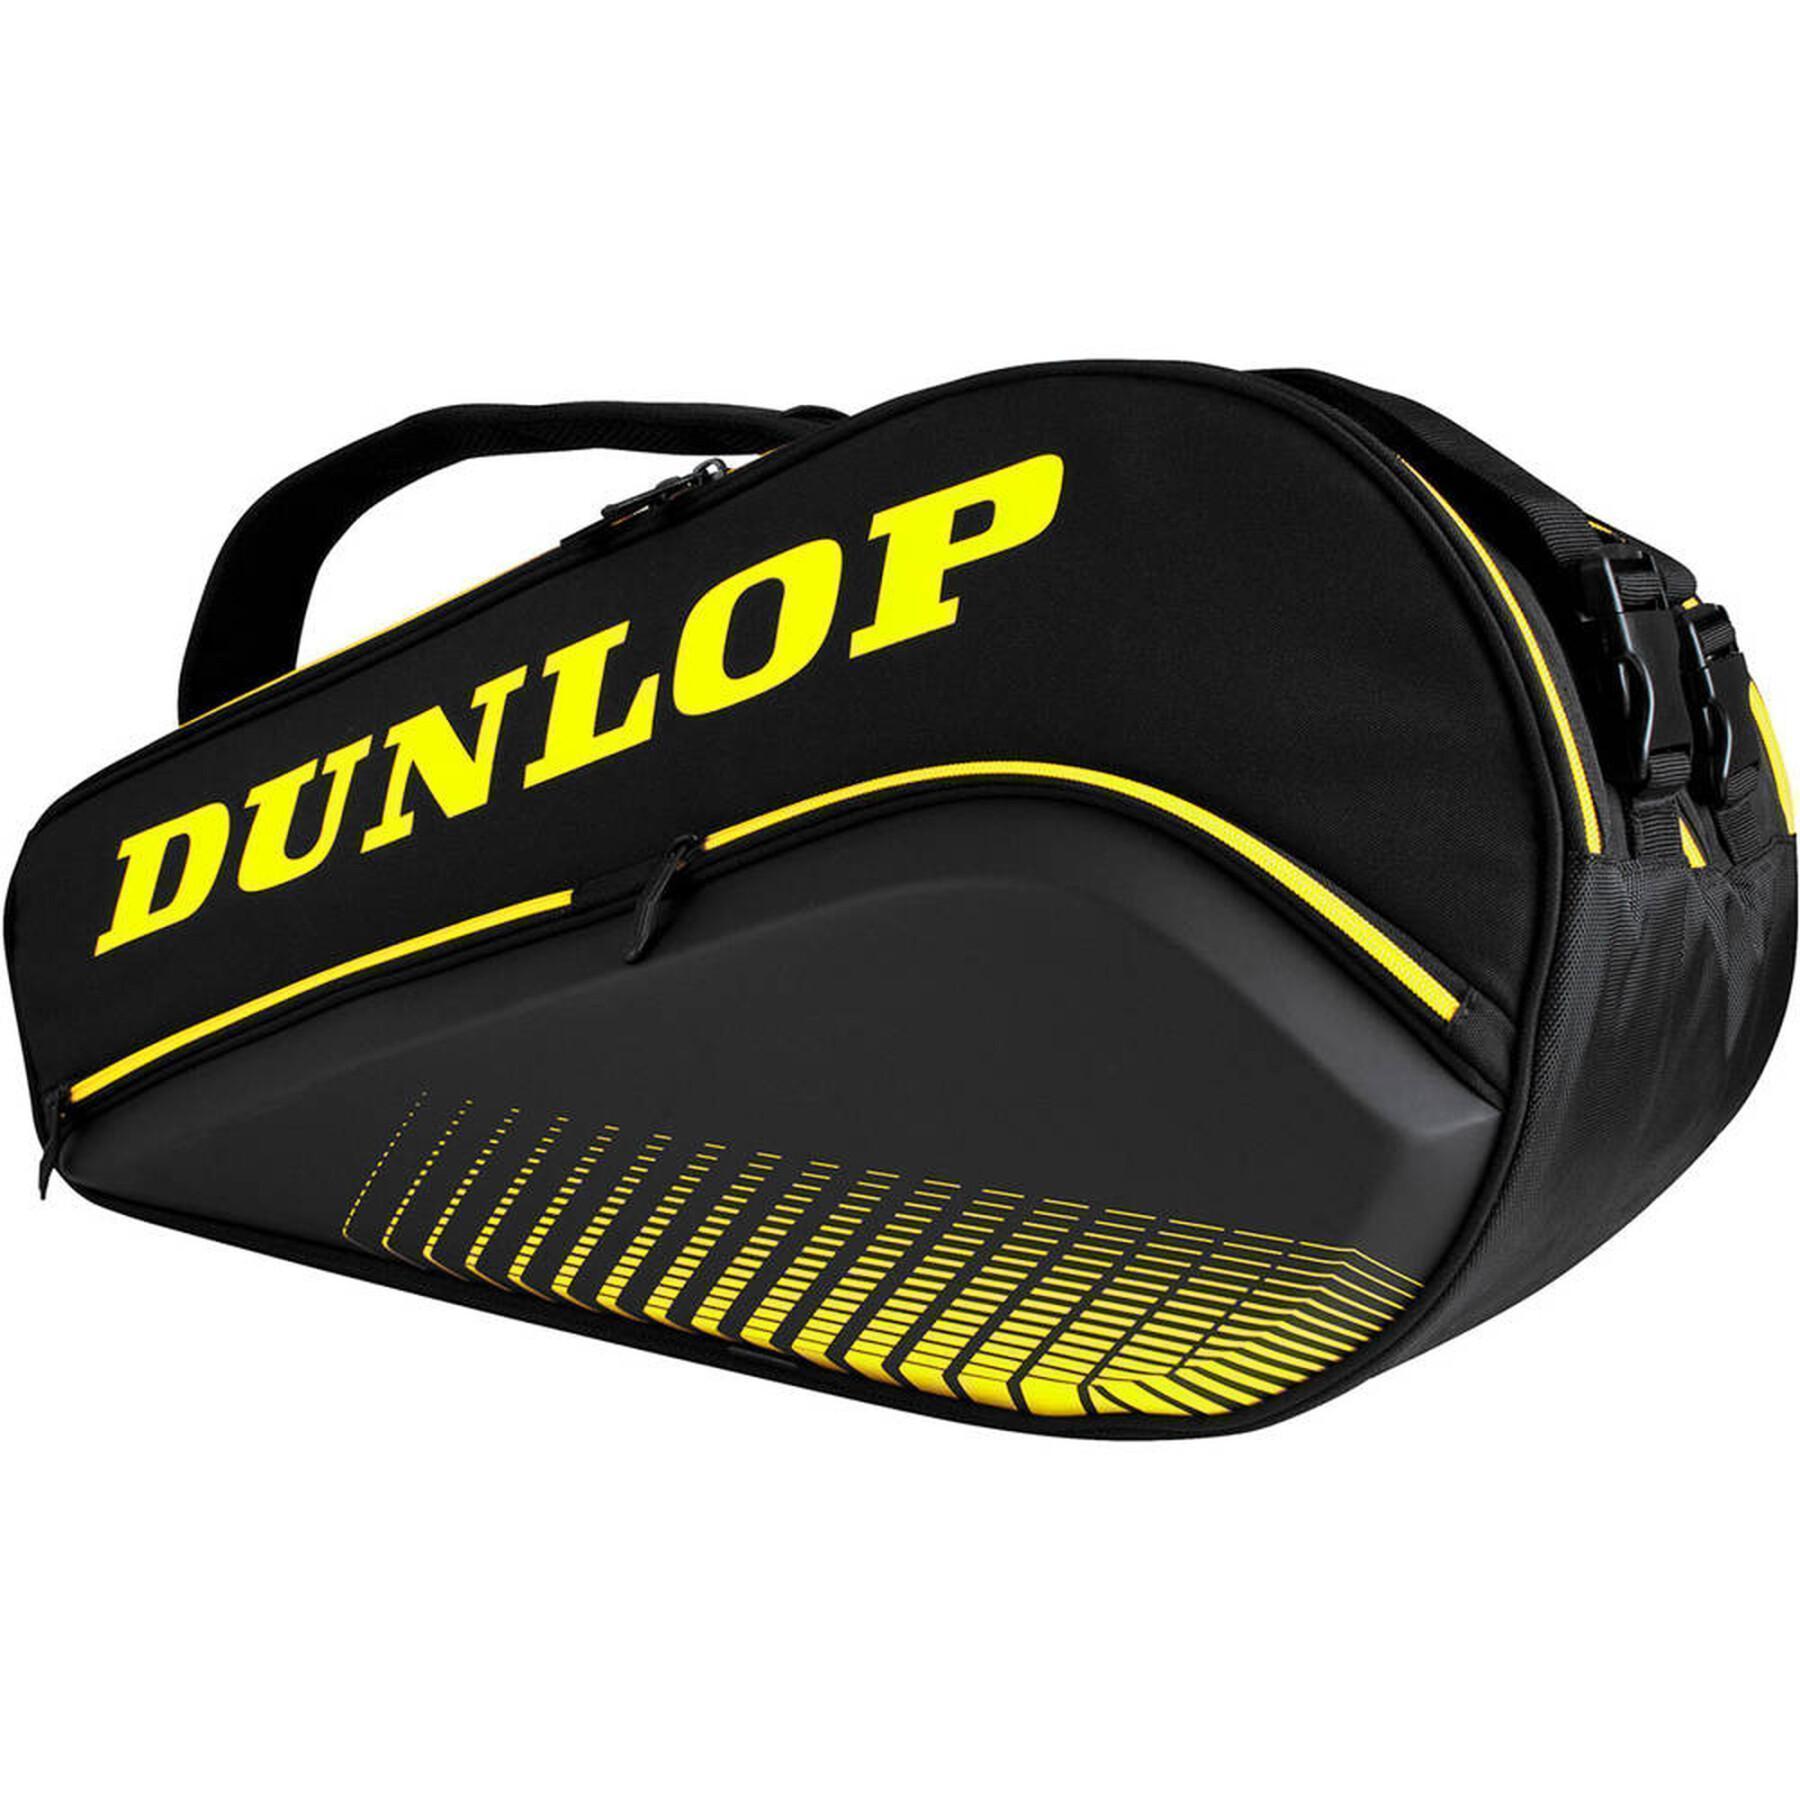 Paddeltasche Dunlop paletero elite